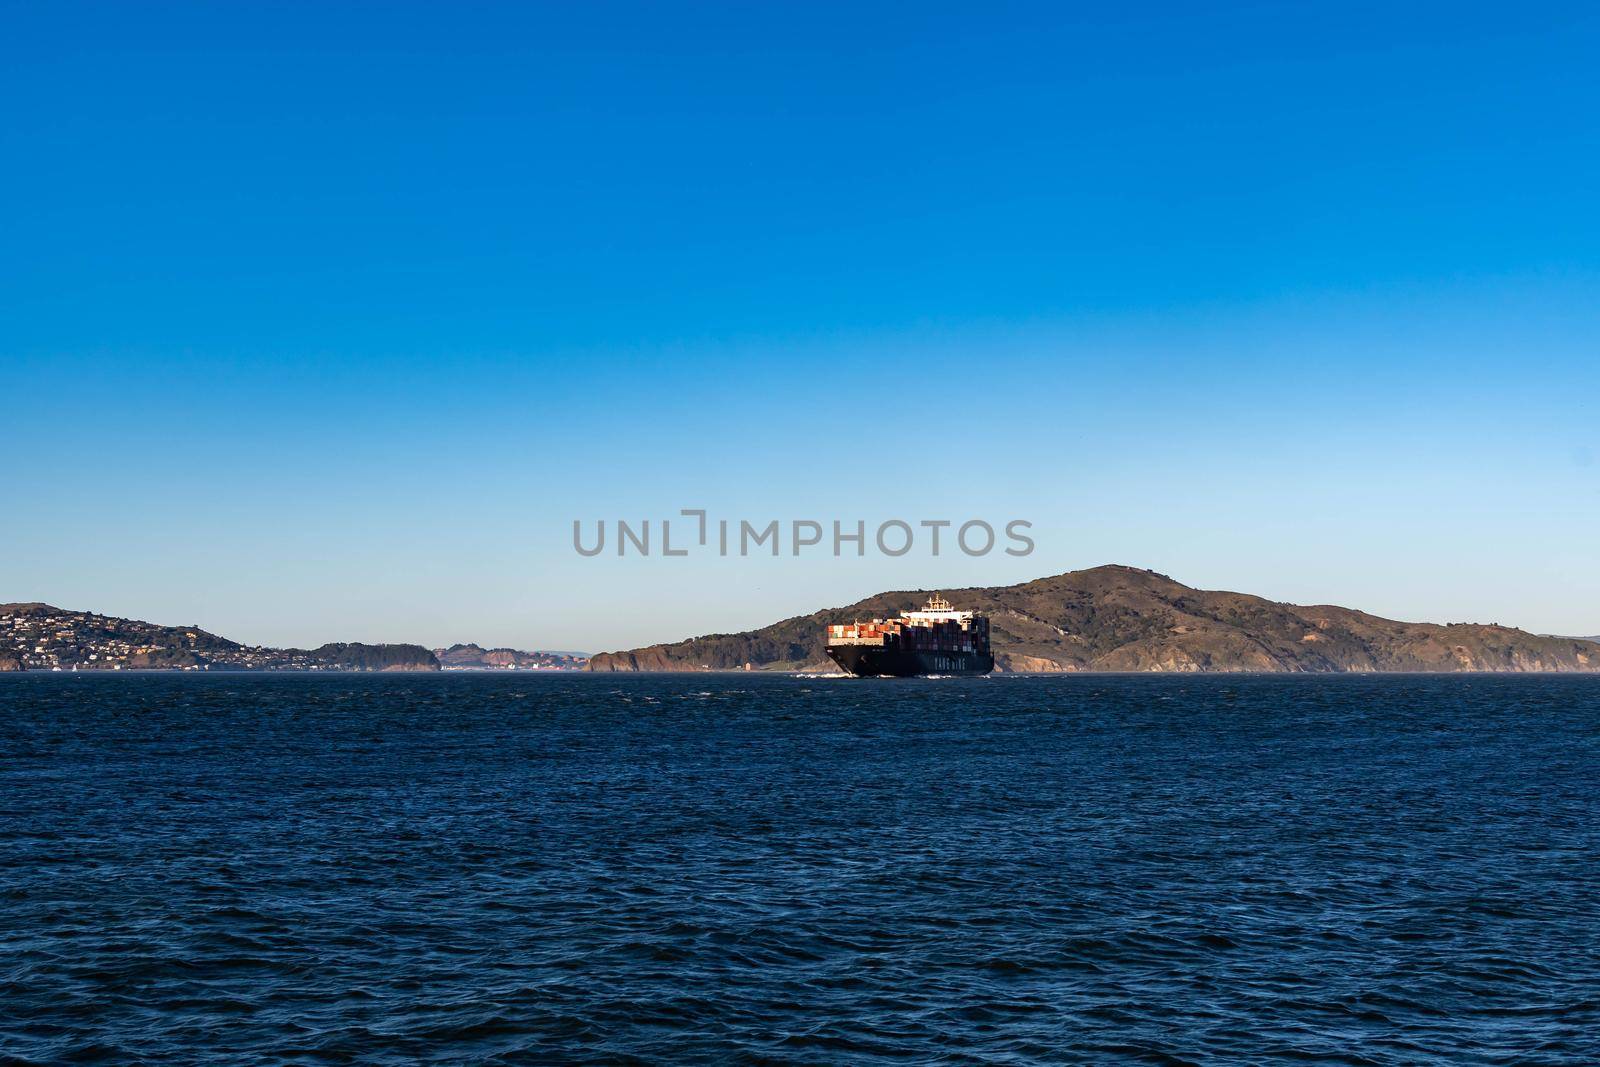 Container ship while cruising the pacific ocean near San Francisco Bay, San Francisco CA USA, March 30, 2020 by billroque